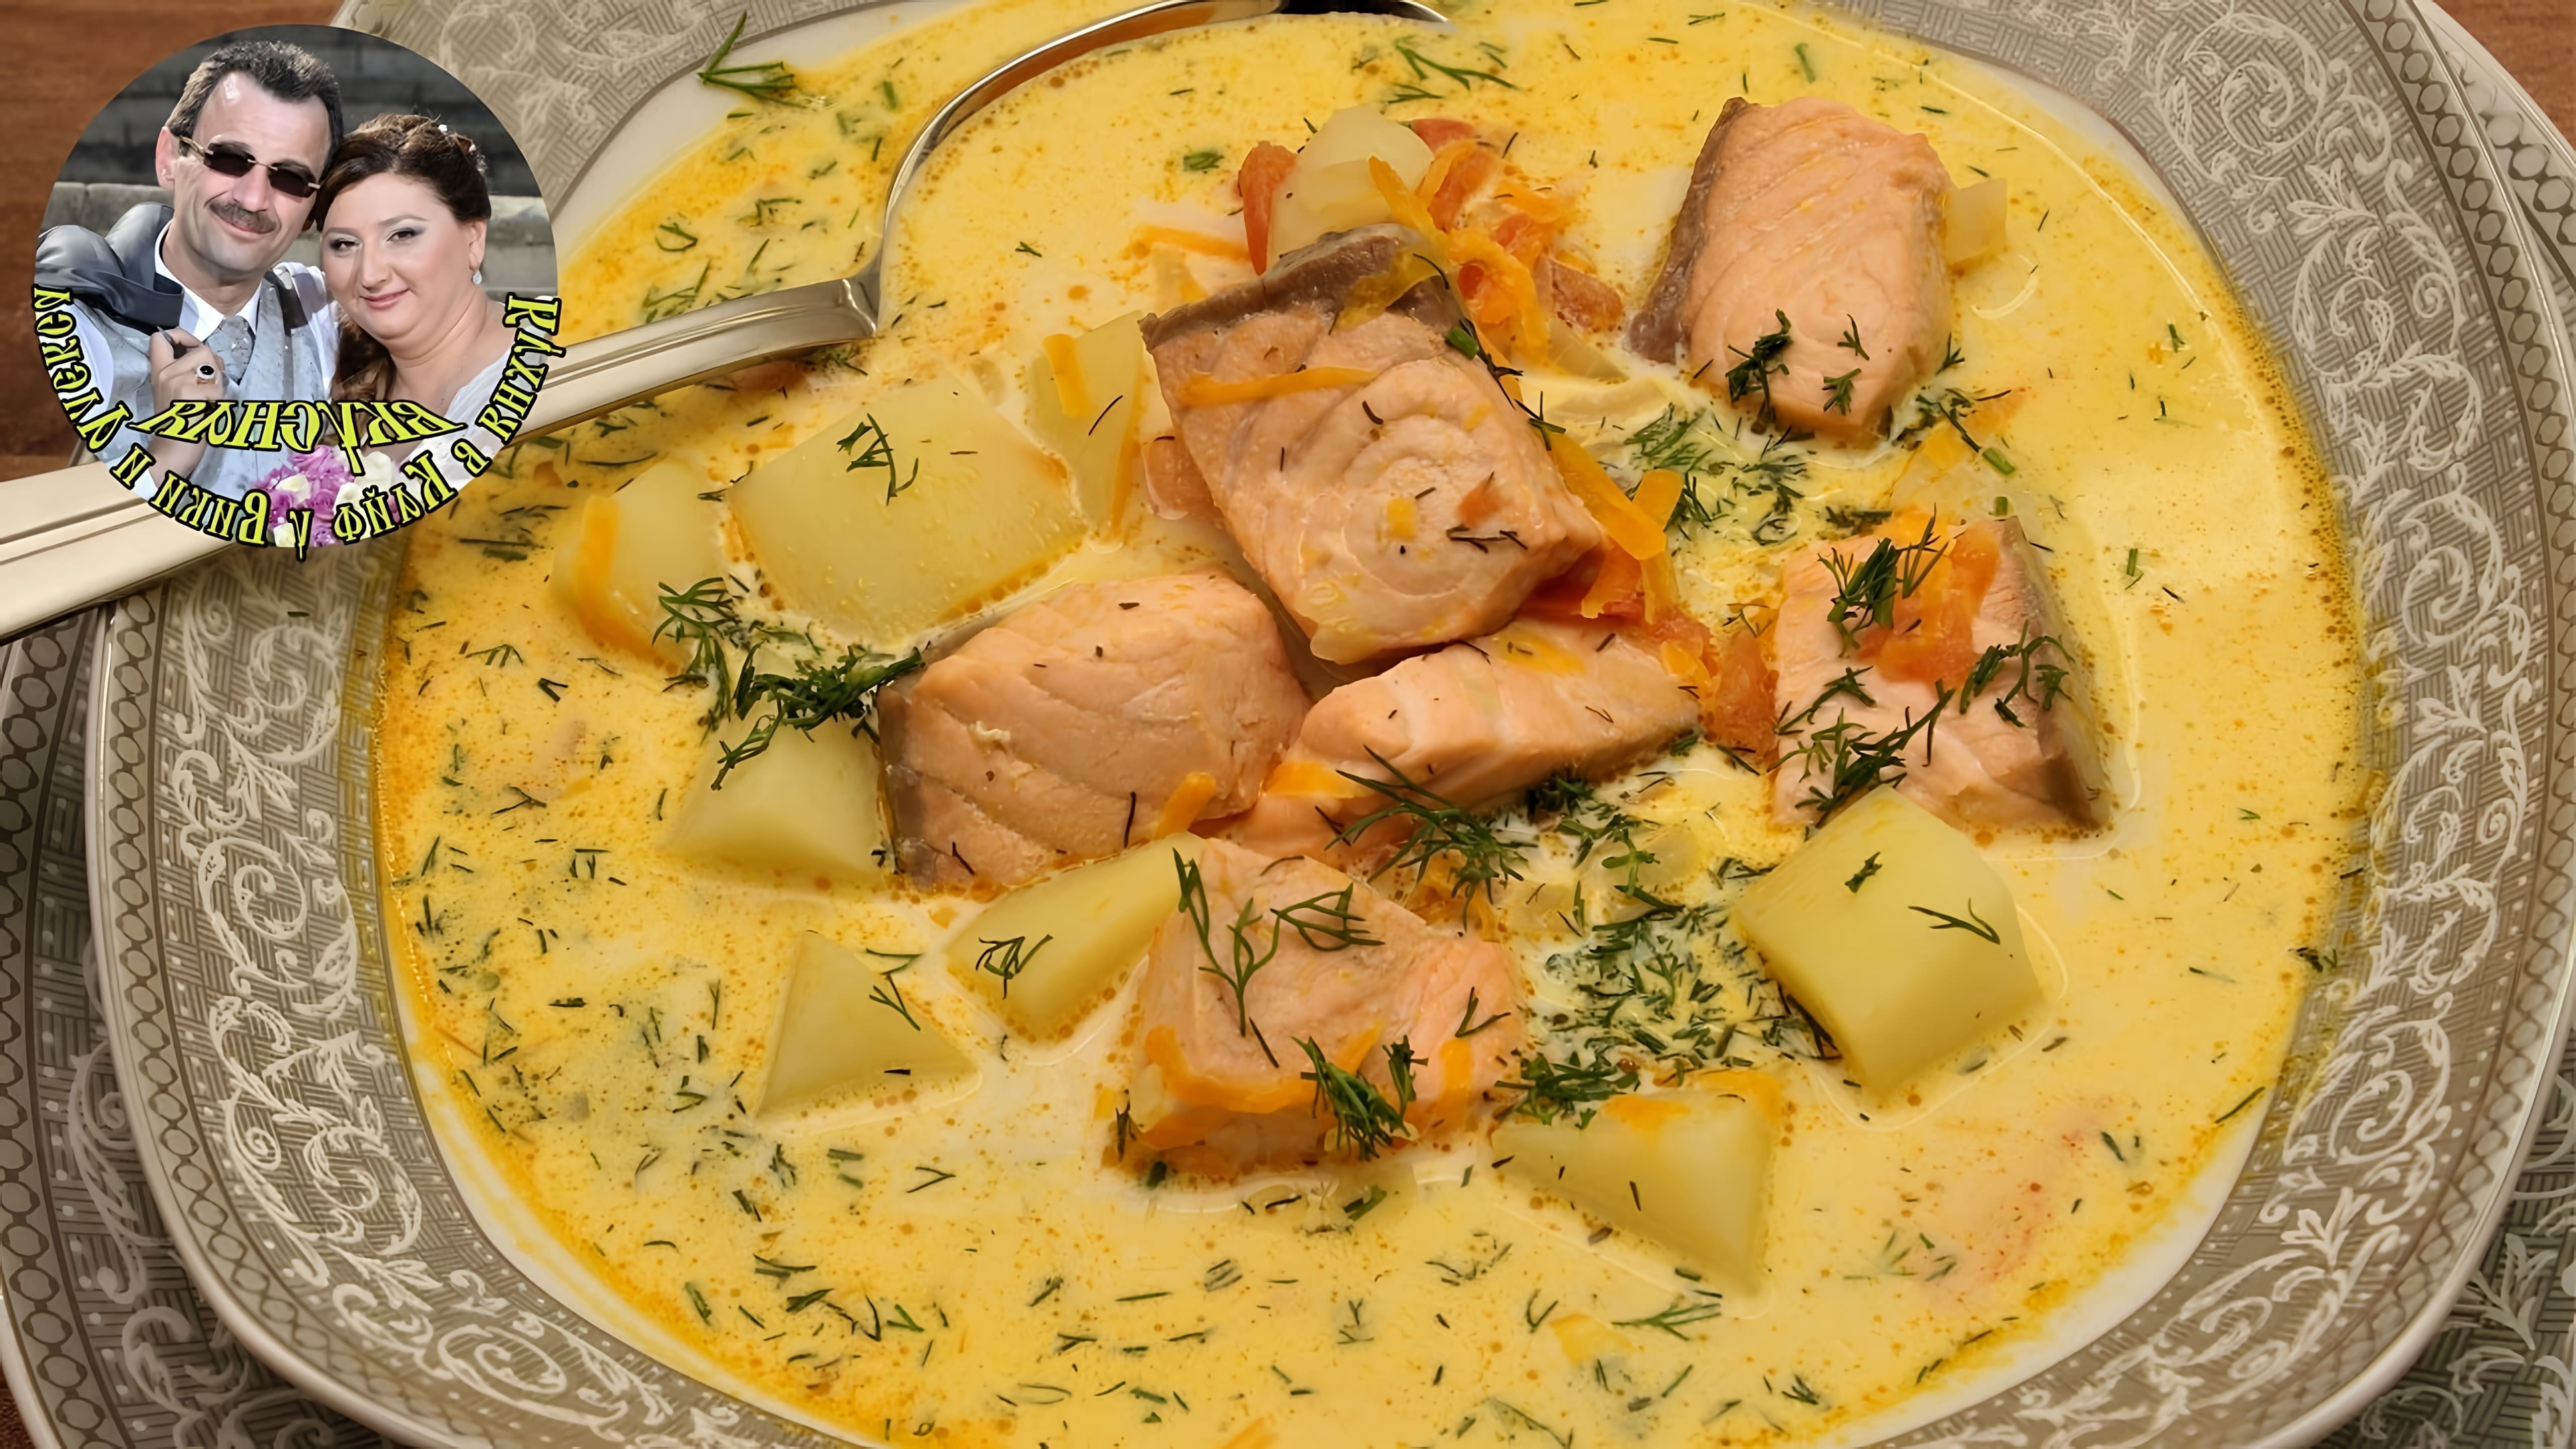 В этом видео демонстрируется процесс приготовления рыбного супа со сливками, известного как лохикейтто